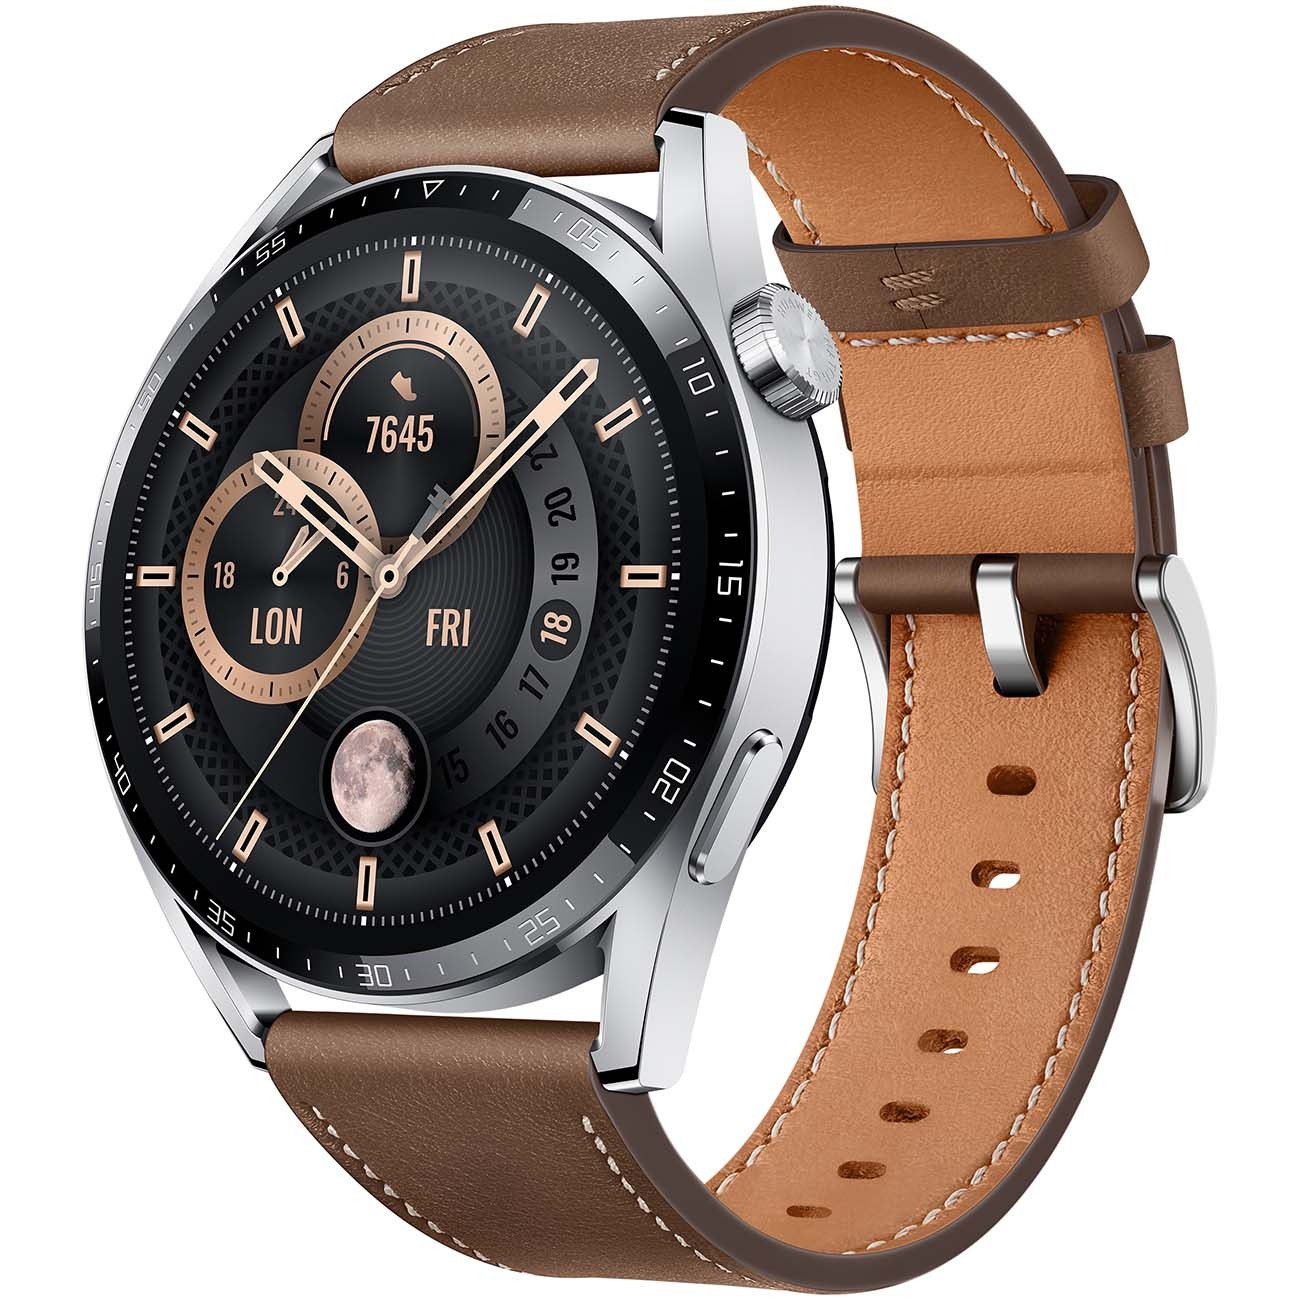 Смарт часы Huawei watch gt 3 brown leather strap (jupiter-b29v)